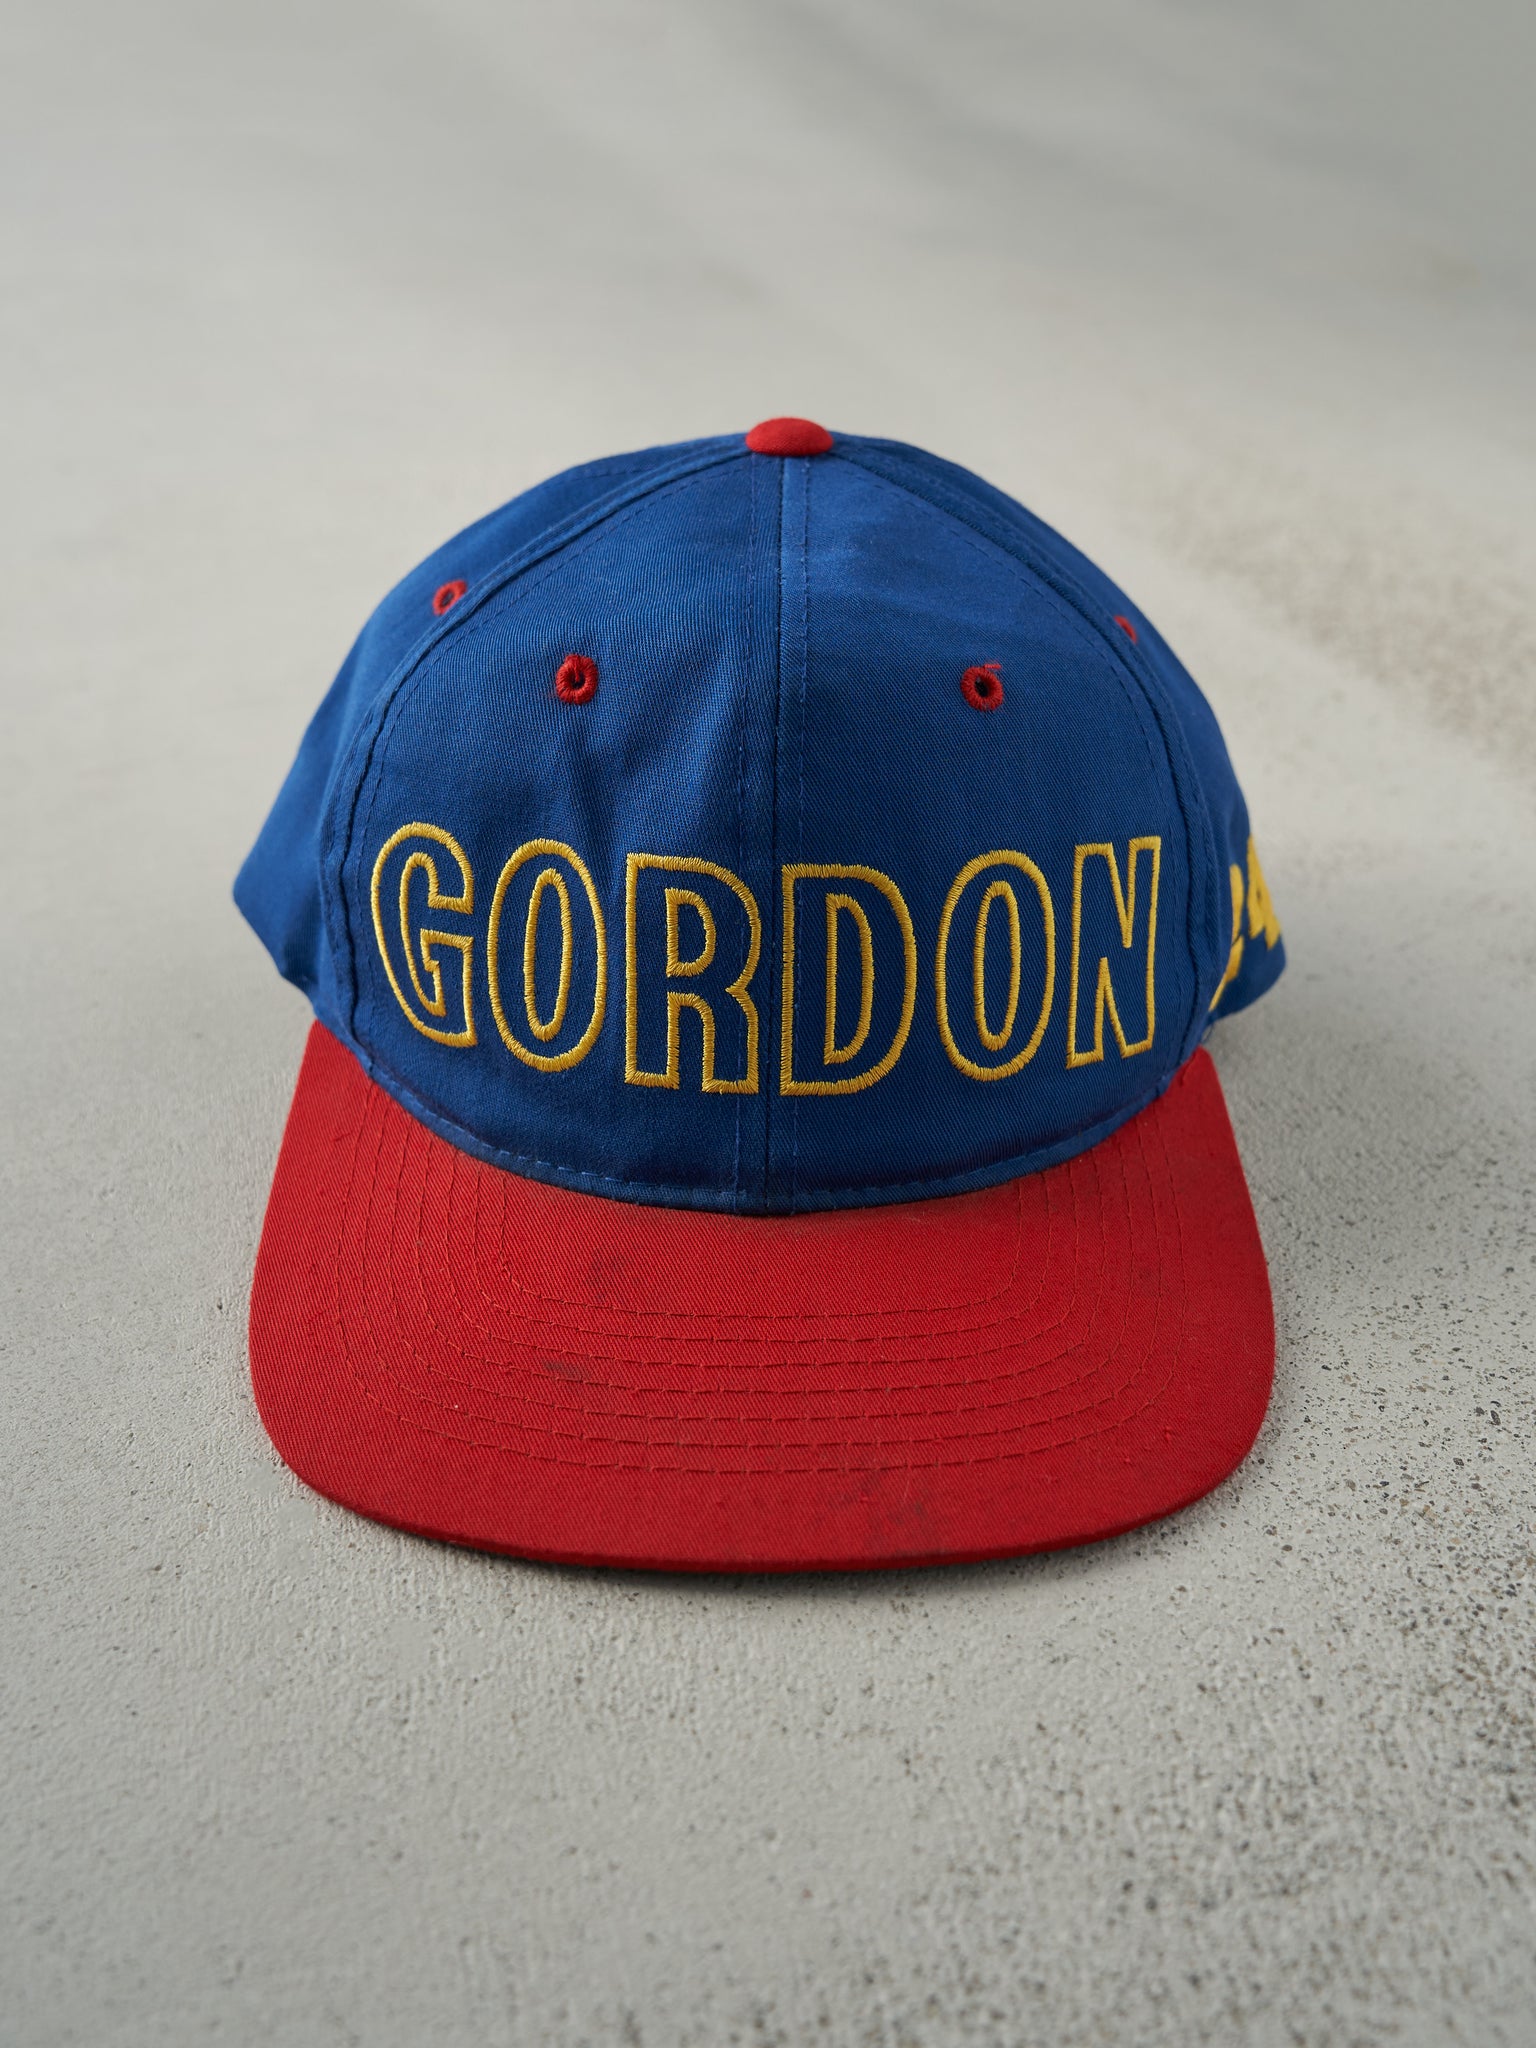 Vintage 90s Blue & Red Jeff Gordon Nascar Snapback Hat